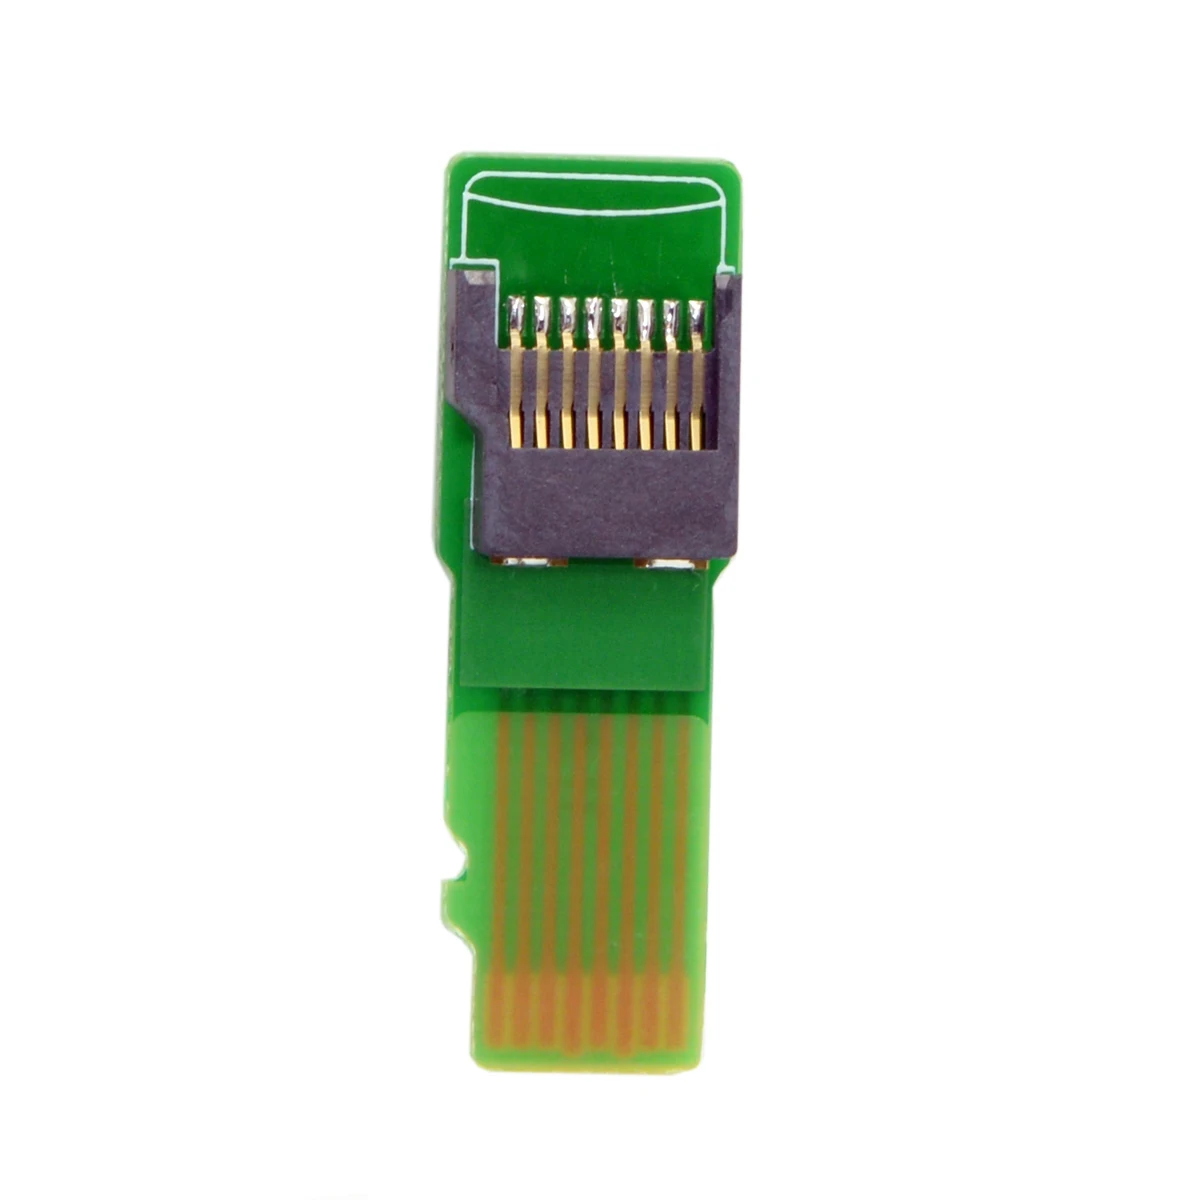 Chenyang-Cable Micro SD TF карта памяти Комплект мужчин и женщин удлинитель адаптер инструменты для тестирования PCBA